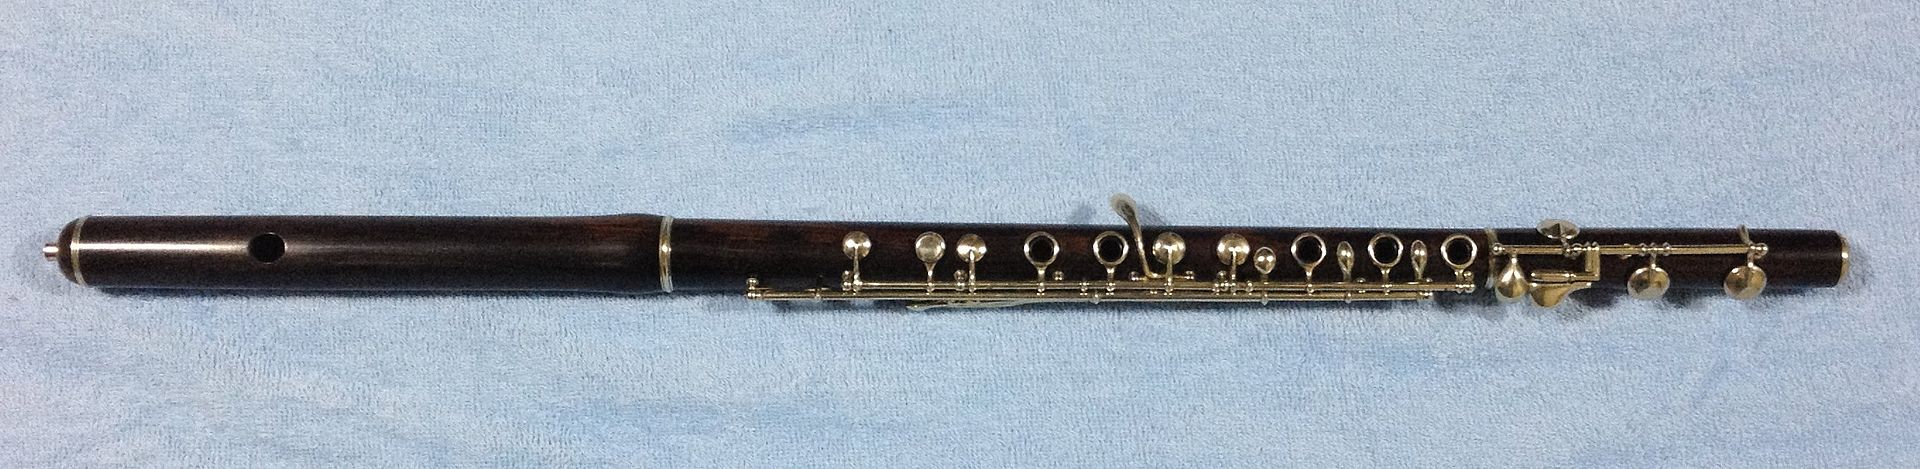 boehm wooden flute